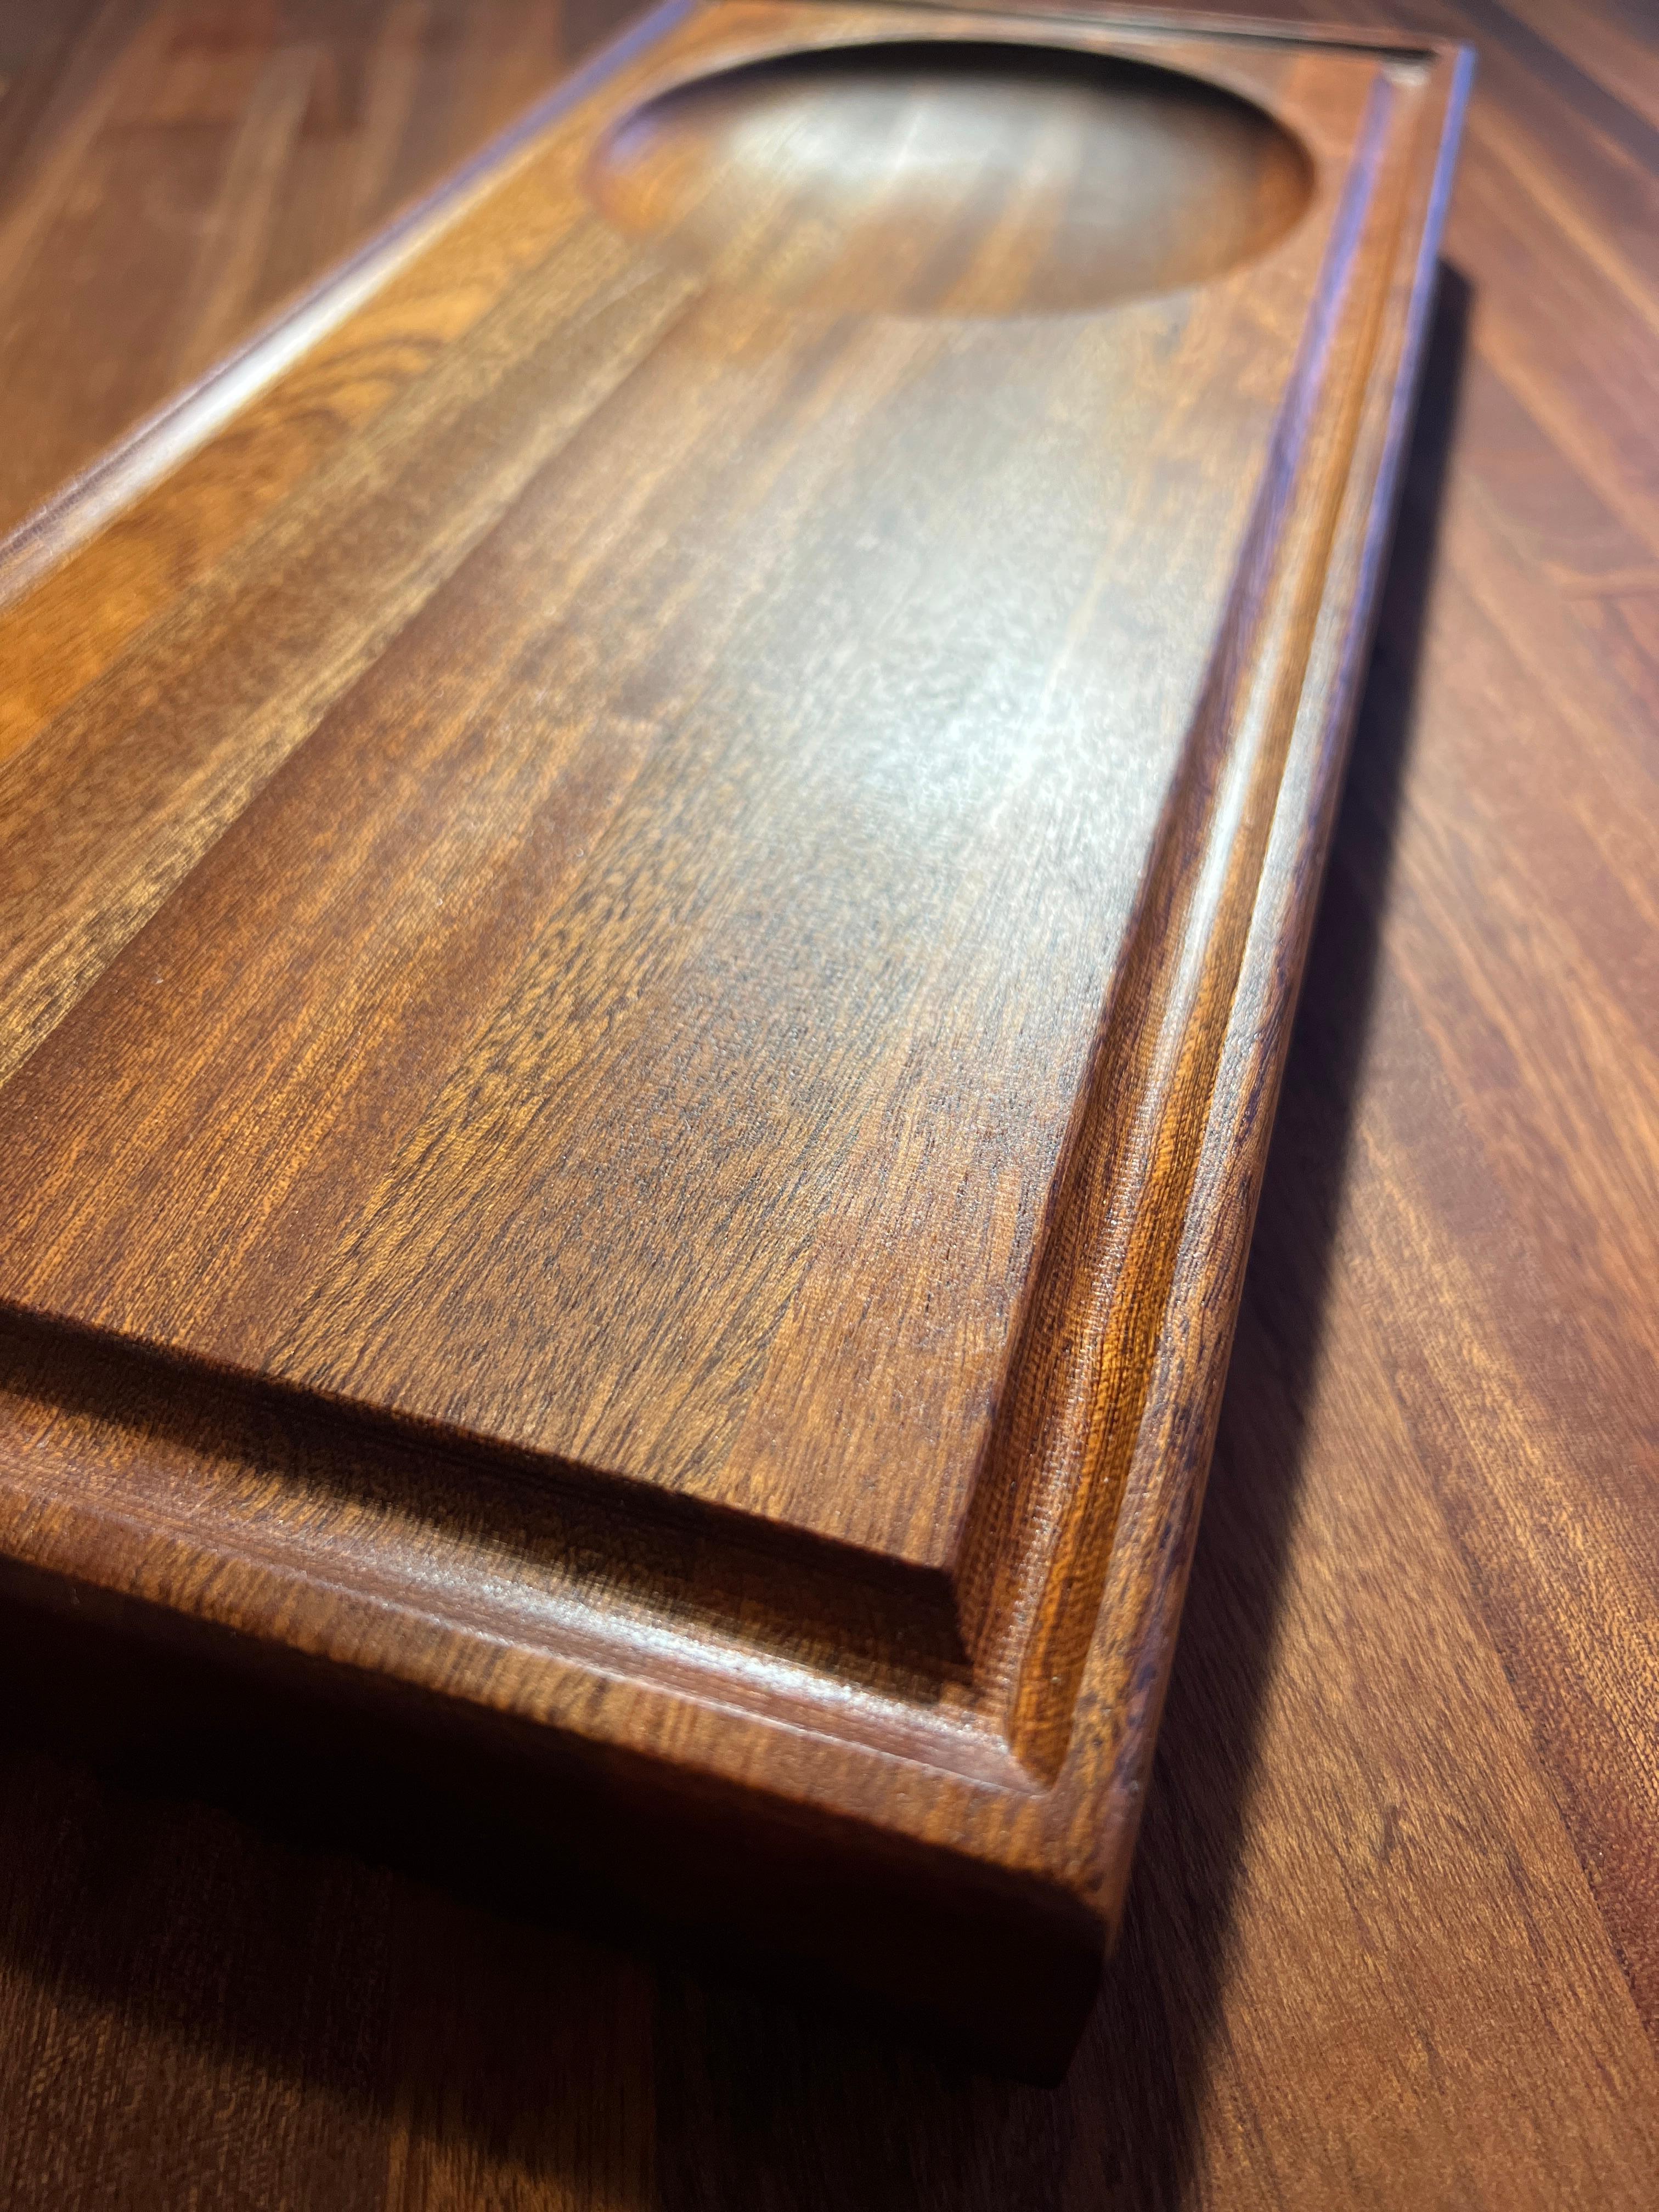 Dieser moderne, handwerklich gefertigte Sapele-Metzgerblock von Fletching Interiors aus Kalifornien ist ein hochwertiges Möbelstück. Es zeichnet sich durch ein neues Design und einen neuen Look aus, der sich von der alten Idee eines einfachen